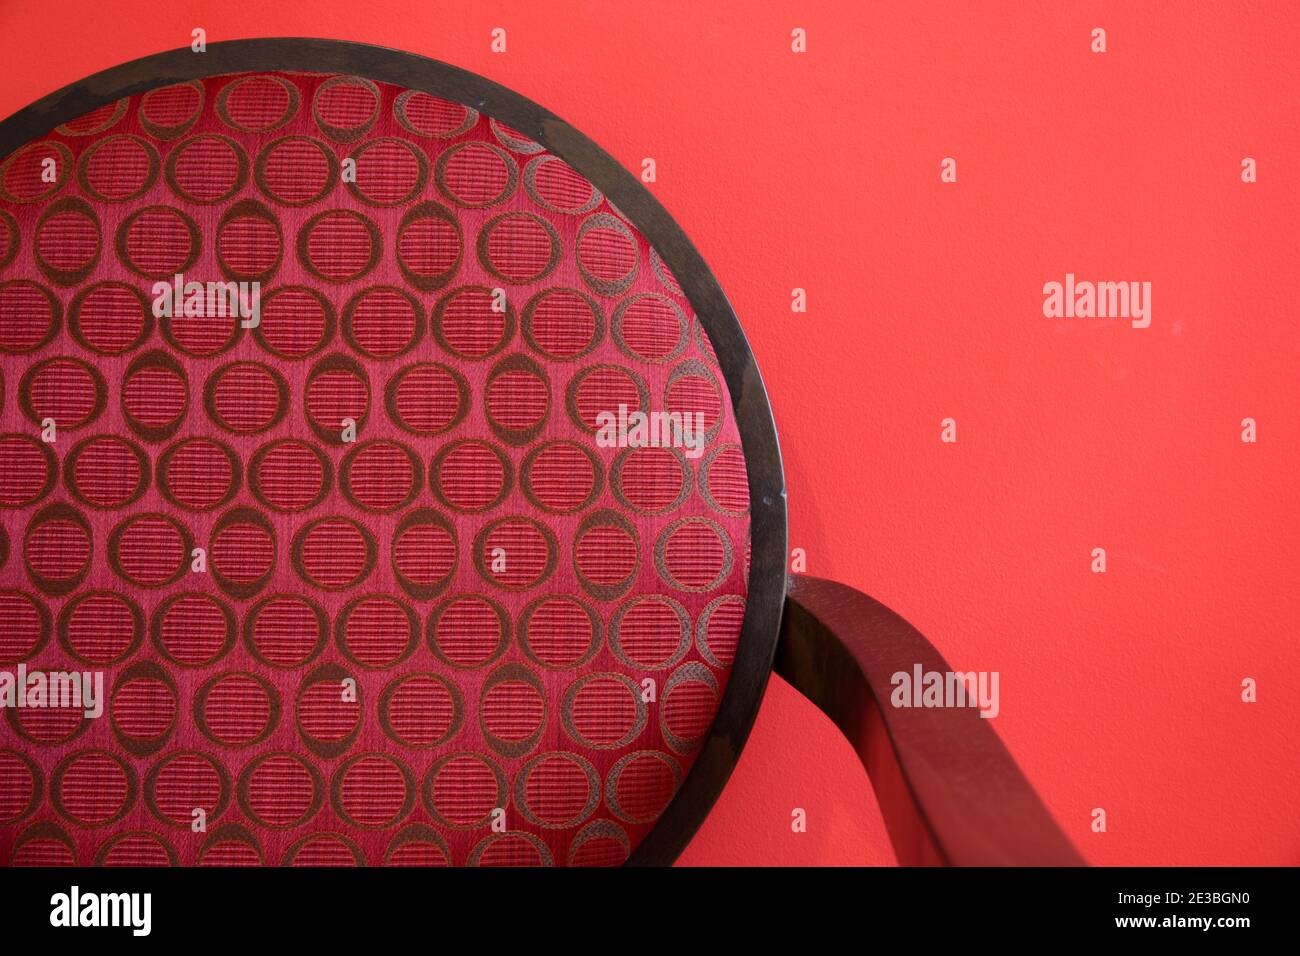 Dettaglio minimalista astratto della moderna sedia da pranzo con schienale rotondo Fotografato contro una parete rossa Foto Stock